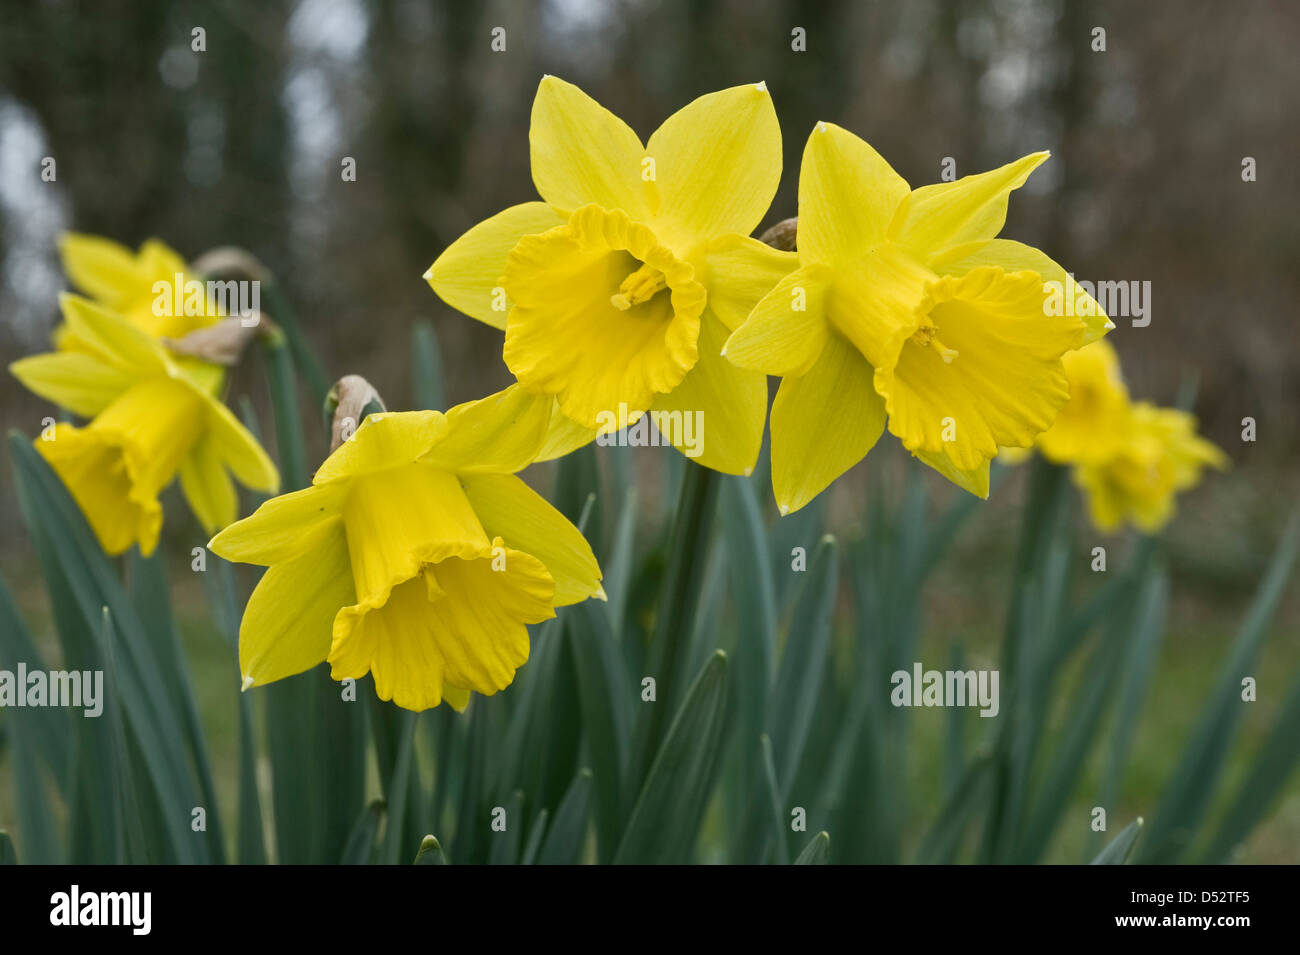 Un selvaggio Tenby daffodil, Narcissus obvallaris, in fiore Foto Stock